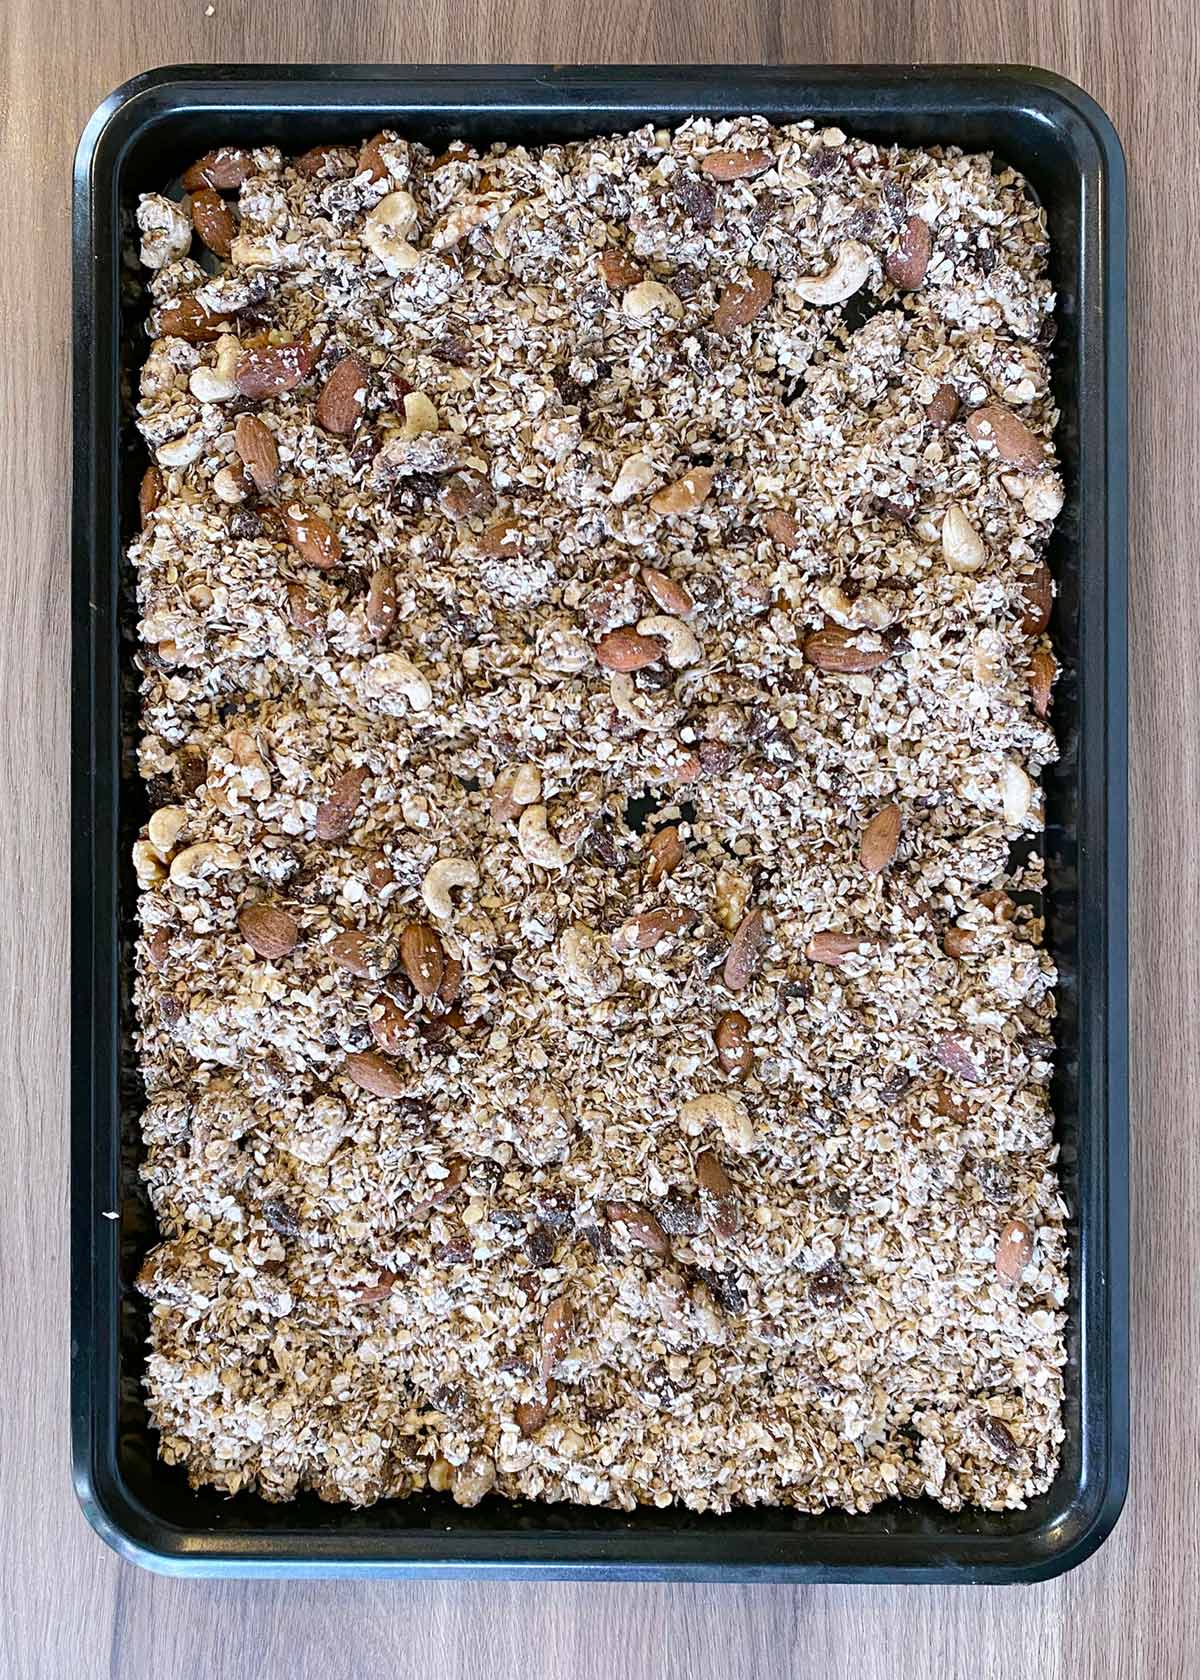 Mixed granola spread over a baking tray.